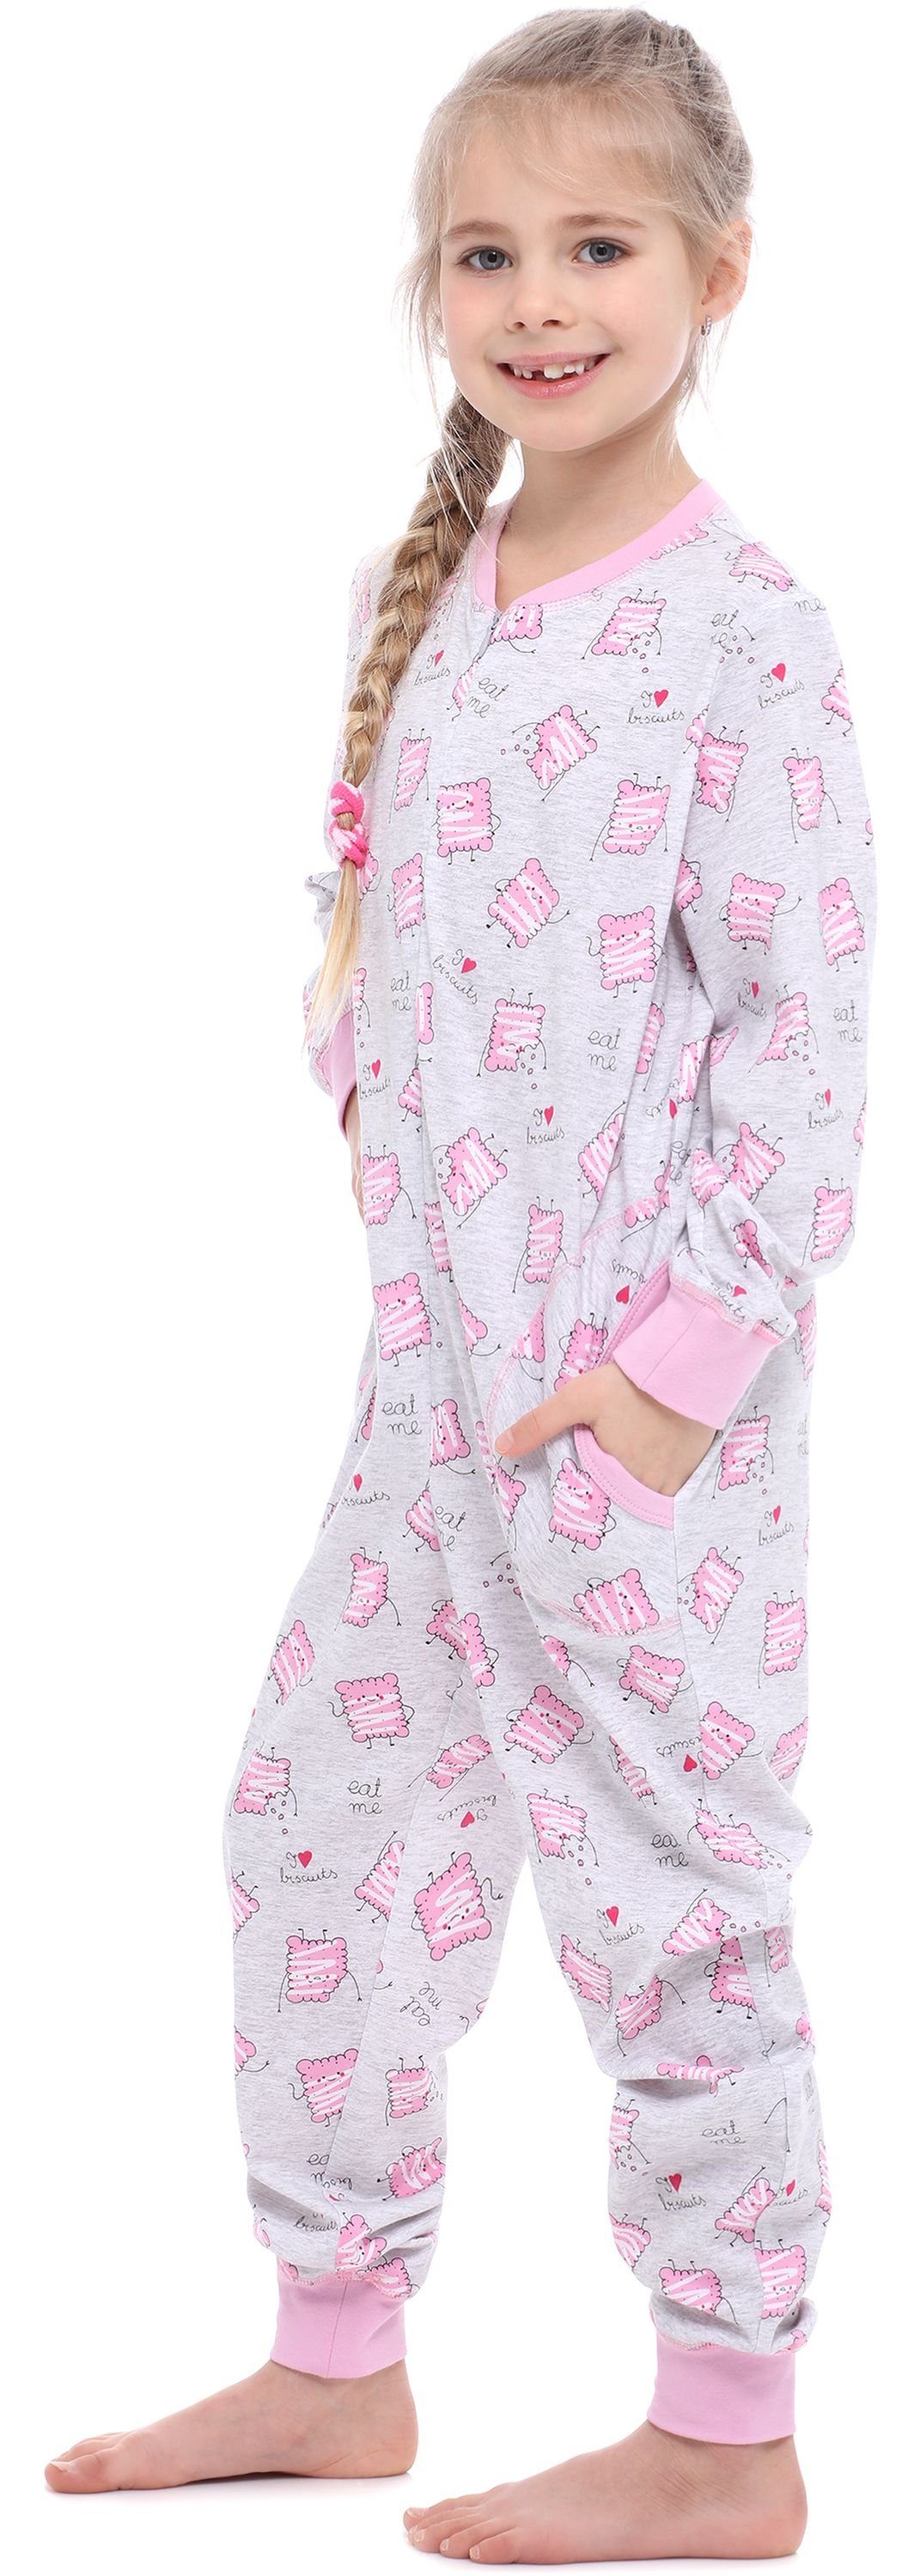 Kekse Merry Jumpsuit Style Melange Mädchen Schlafanzug MS10-186 Schlafanzug